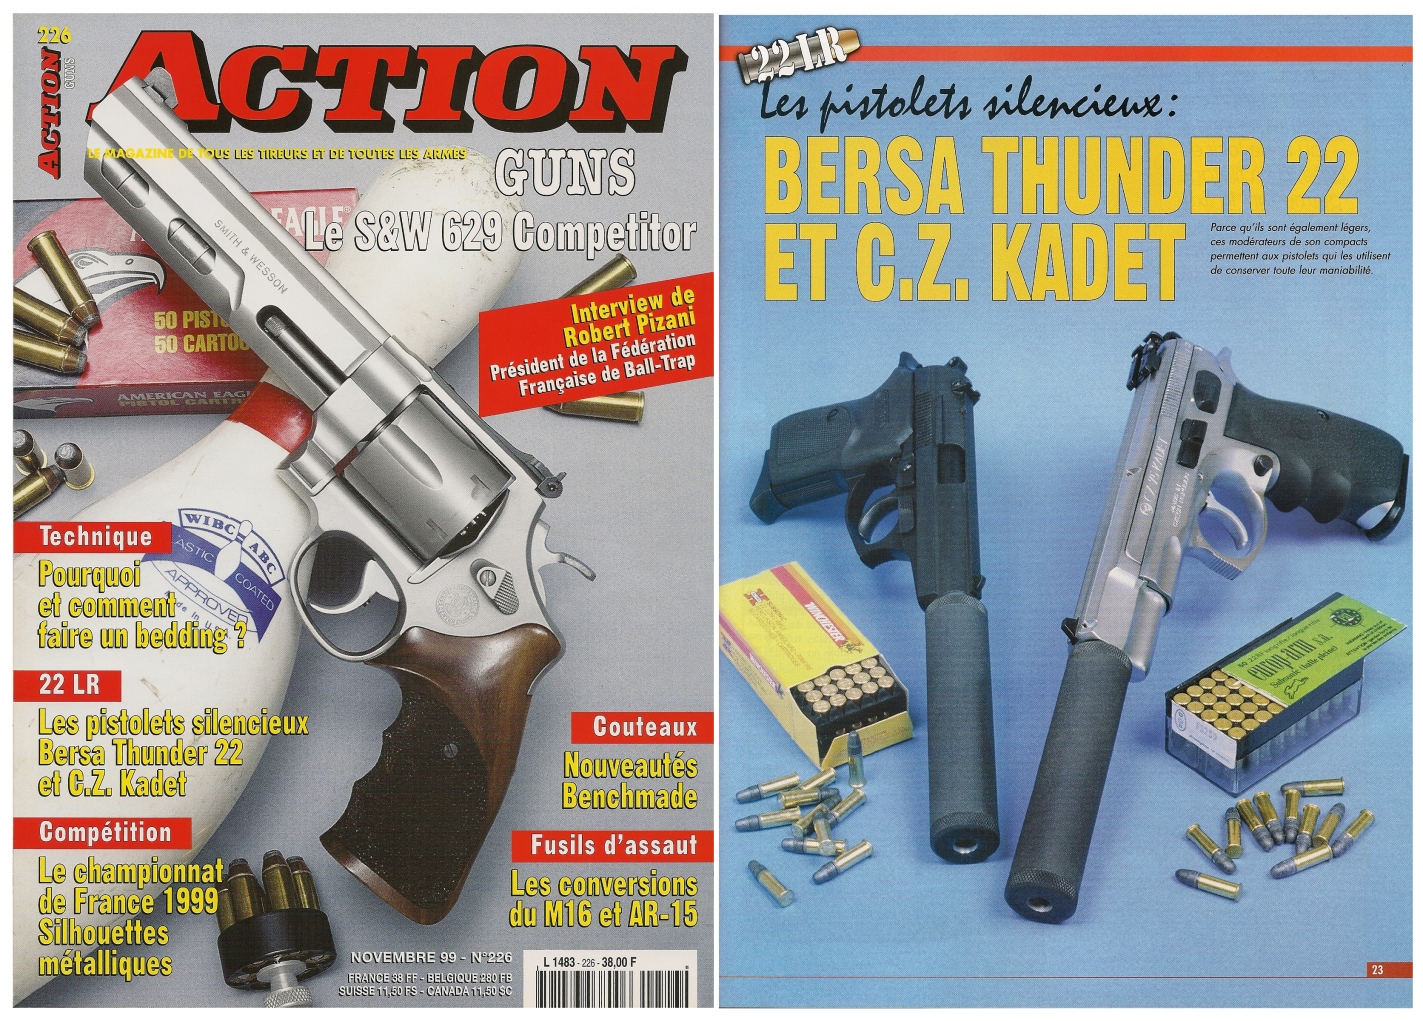 Le banc d'essai des pistolets Bersa Thunder et CZ-75 Kadet a été publié sur 5 pages dans le magazine Action Guns n° 226 (novembre 1999).